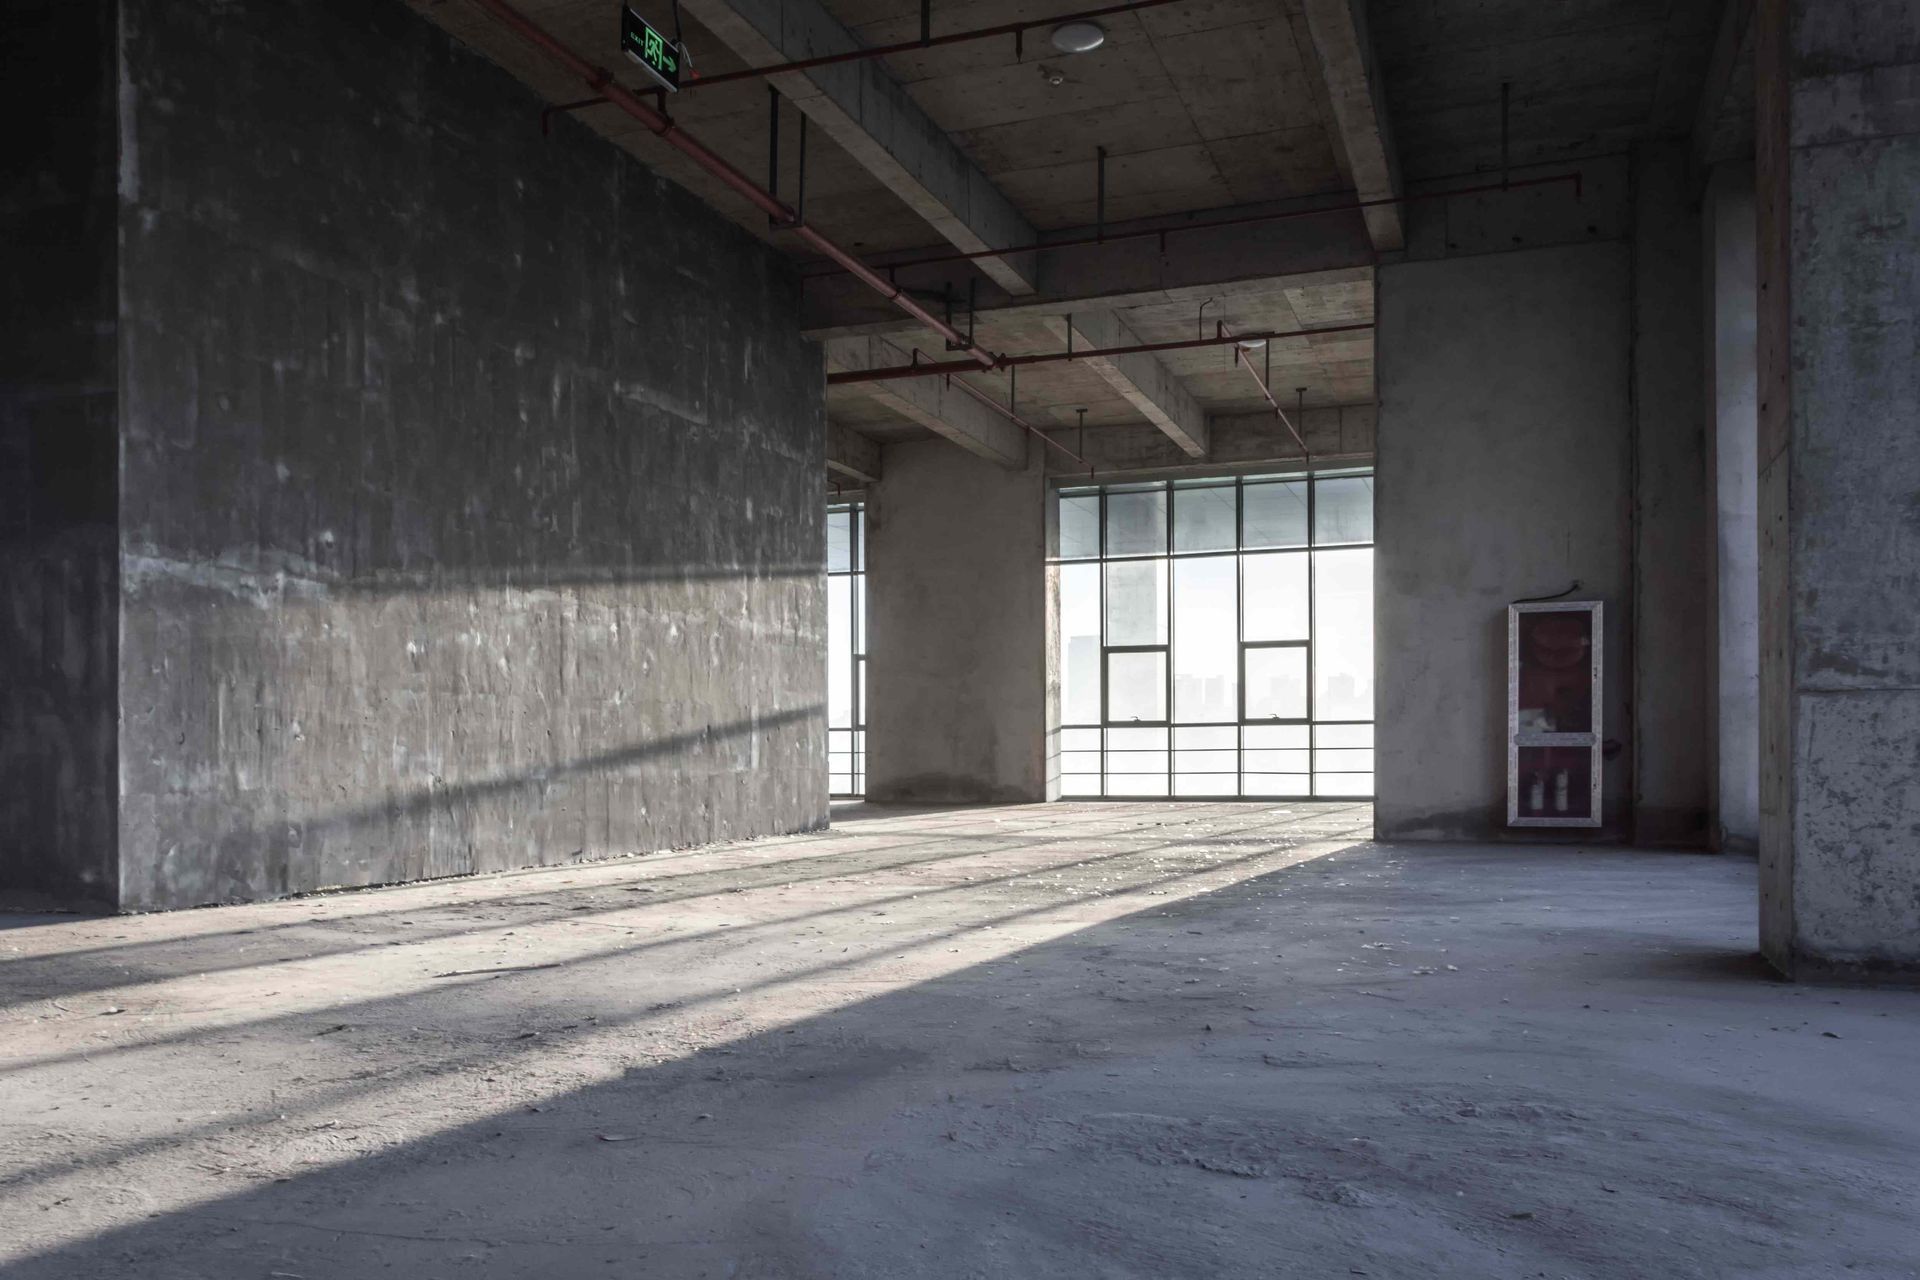 A concrete floor indoors